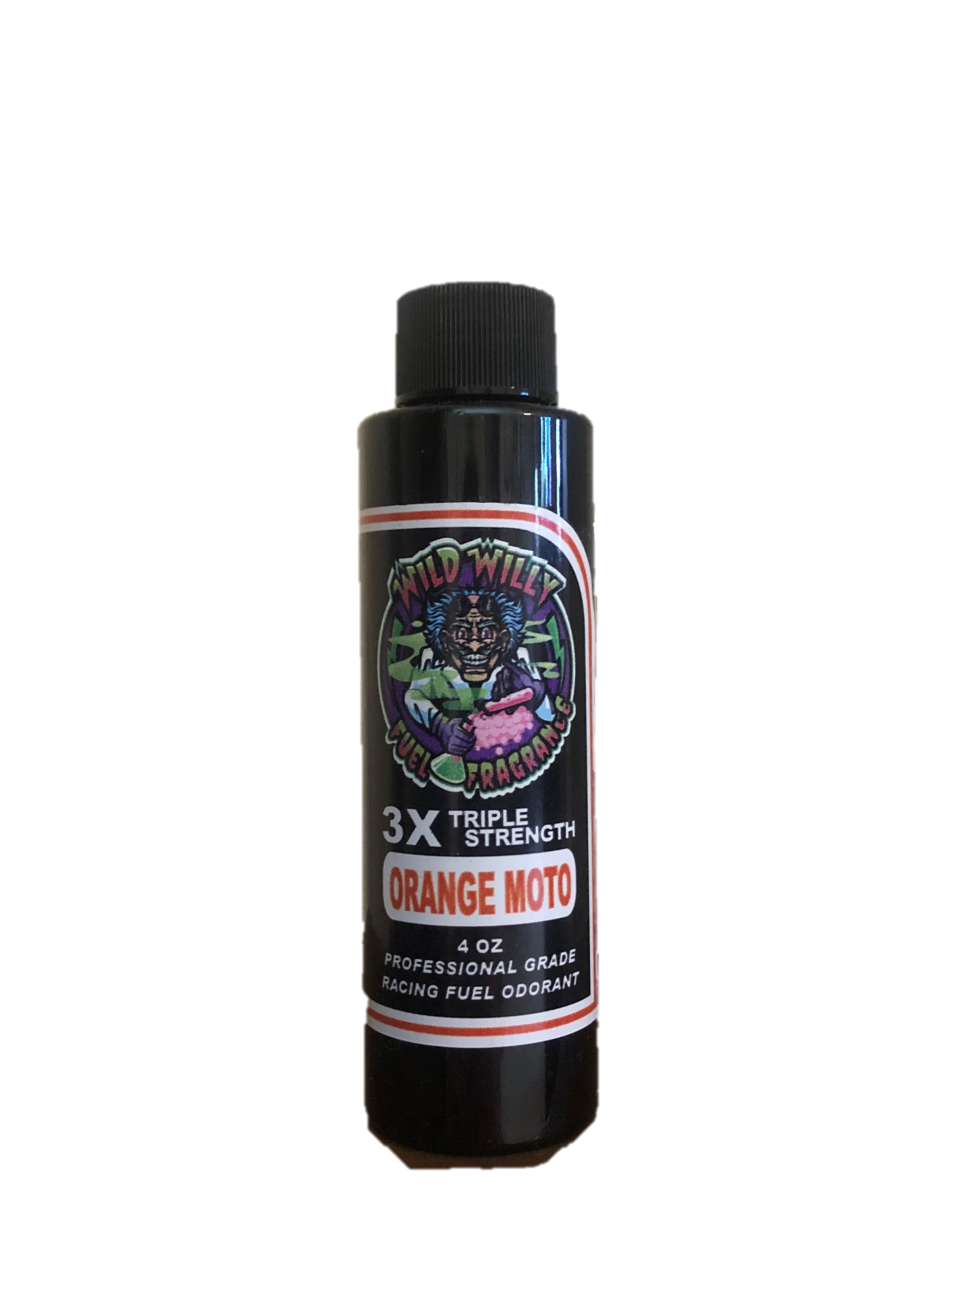 Orange Moto - Wild Willy Fuel Fragrance - 3X Triple Strength!